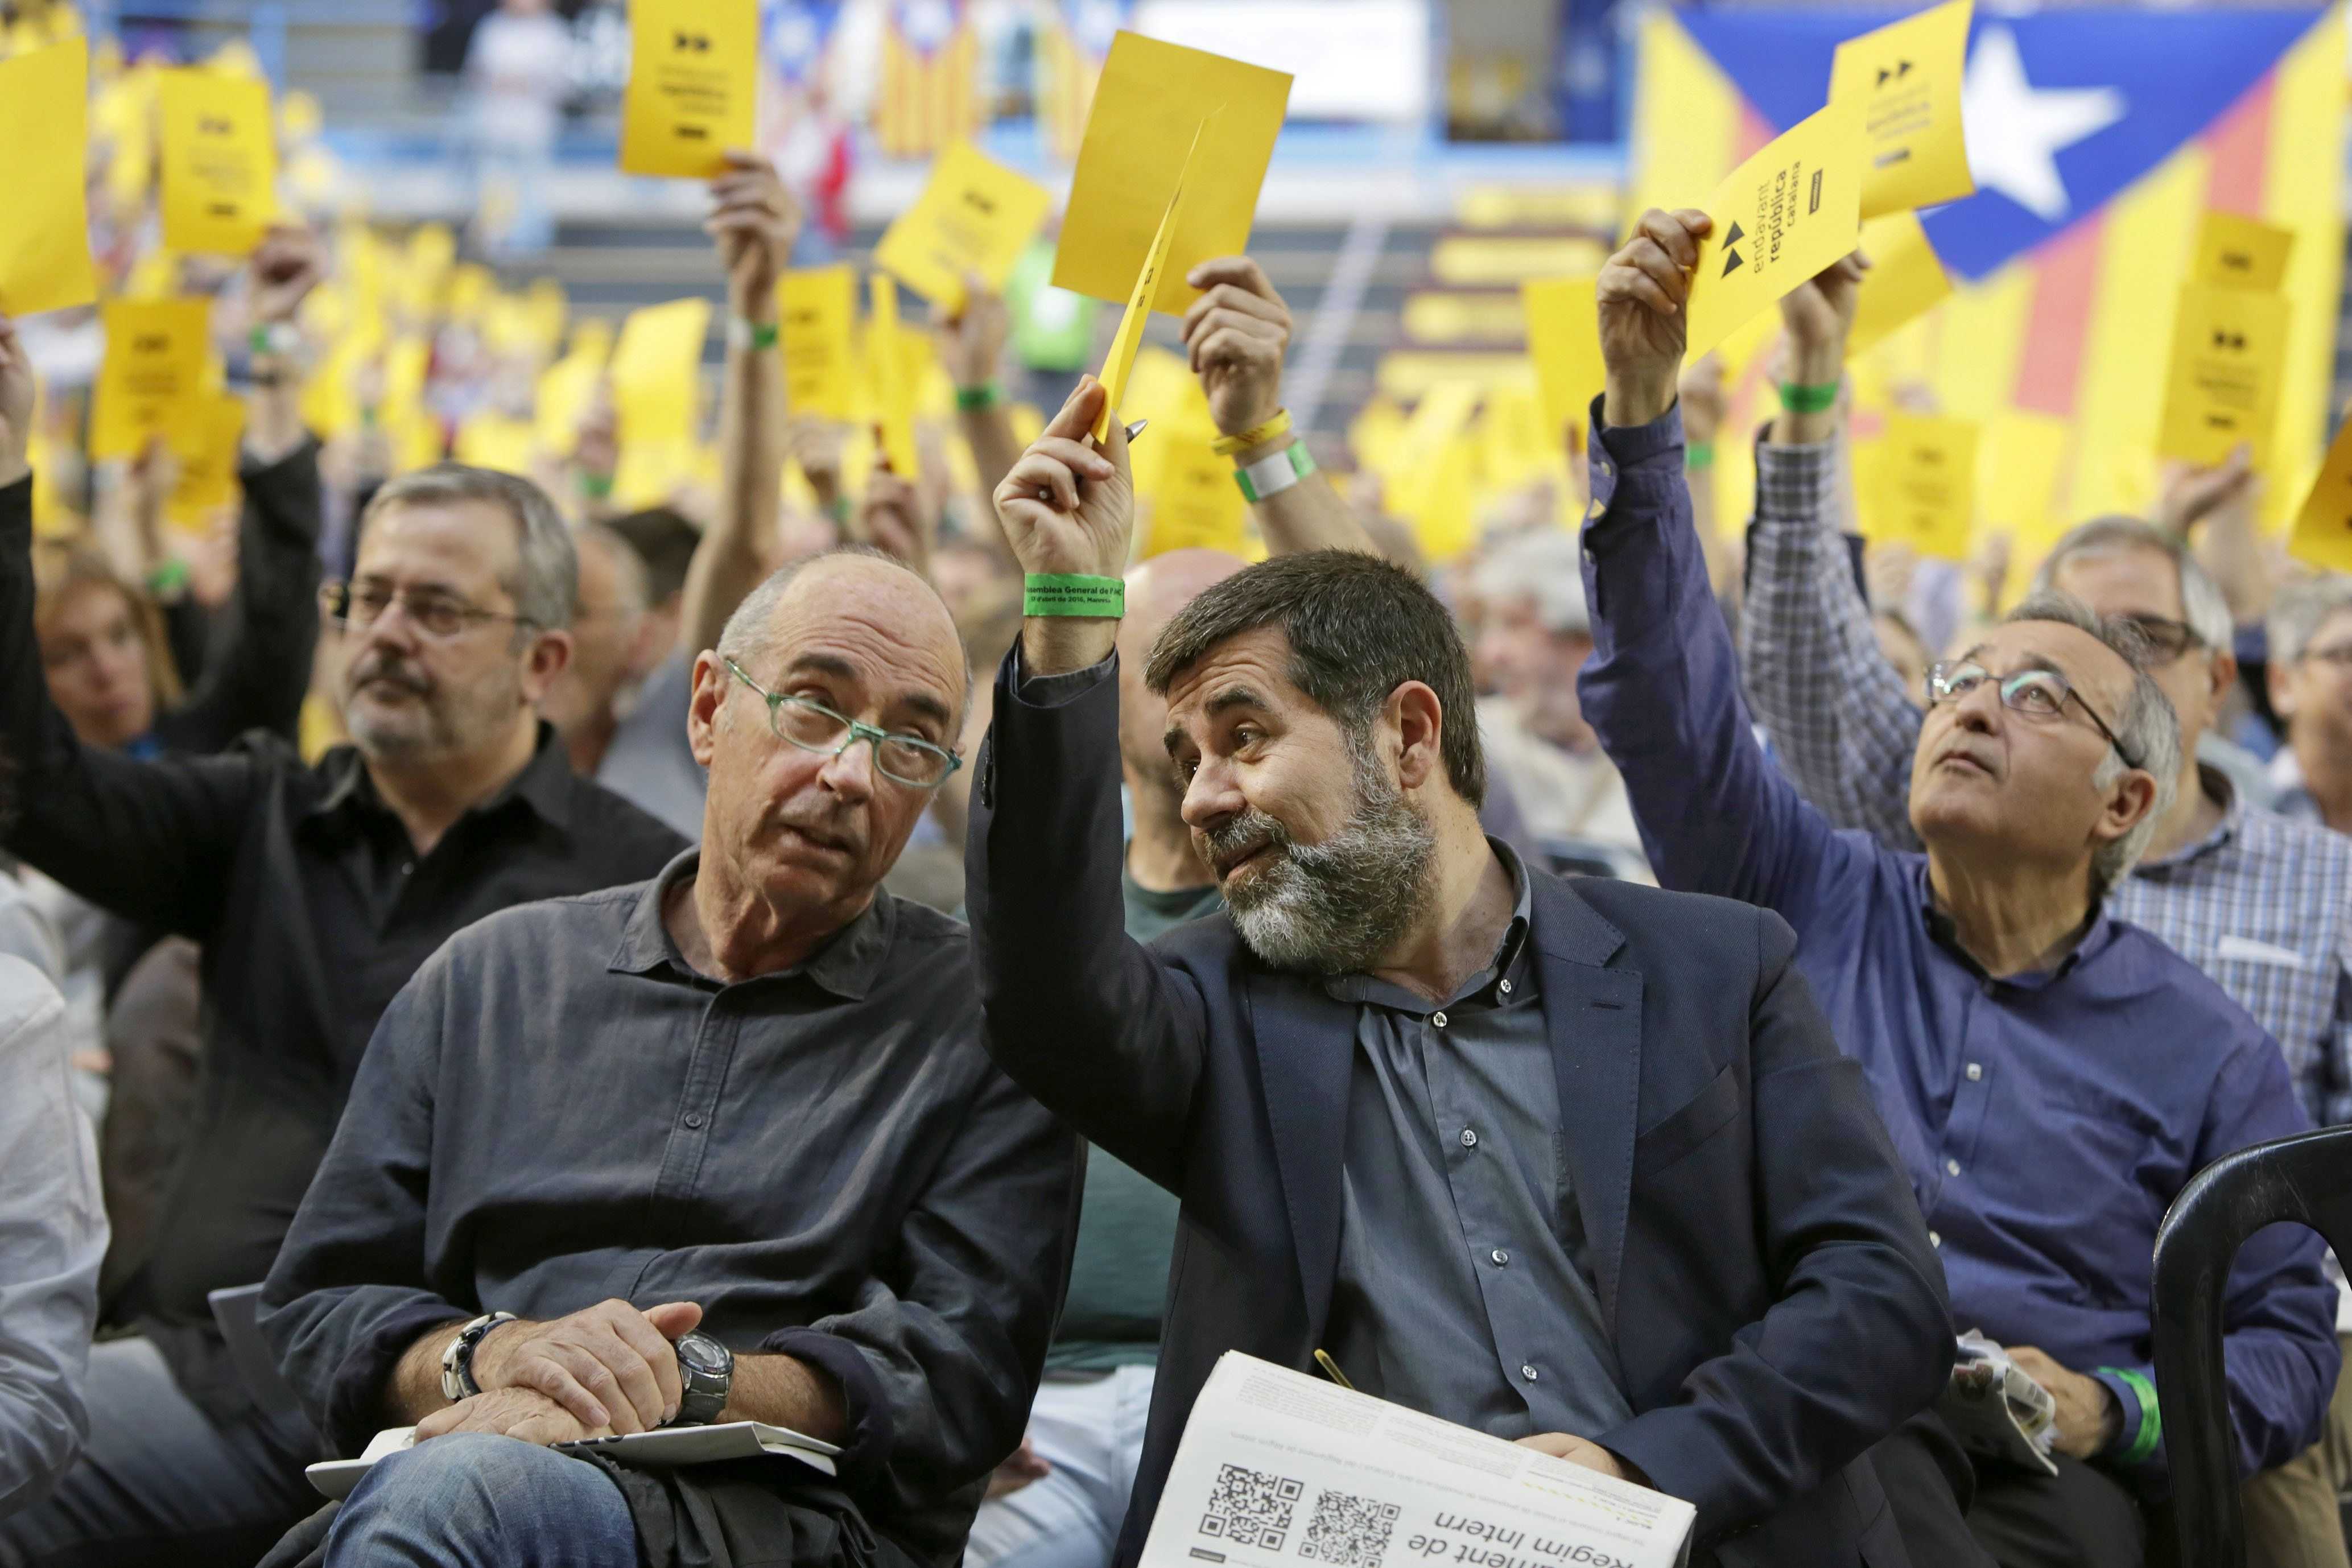 L’ANC organitzarà la "Setmana Catalana al món” per explicar el procés